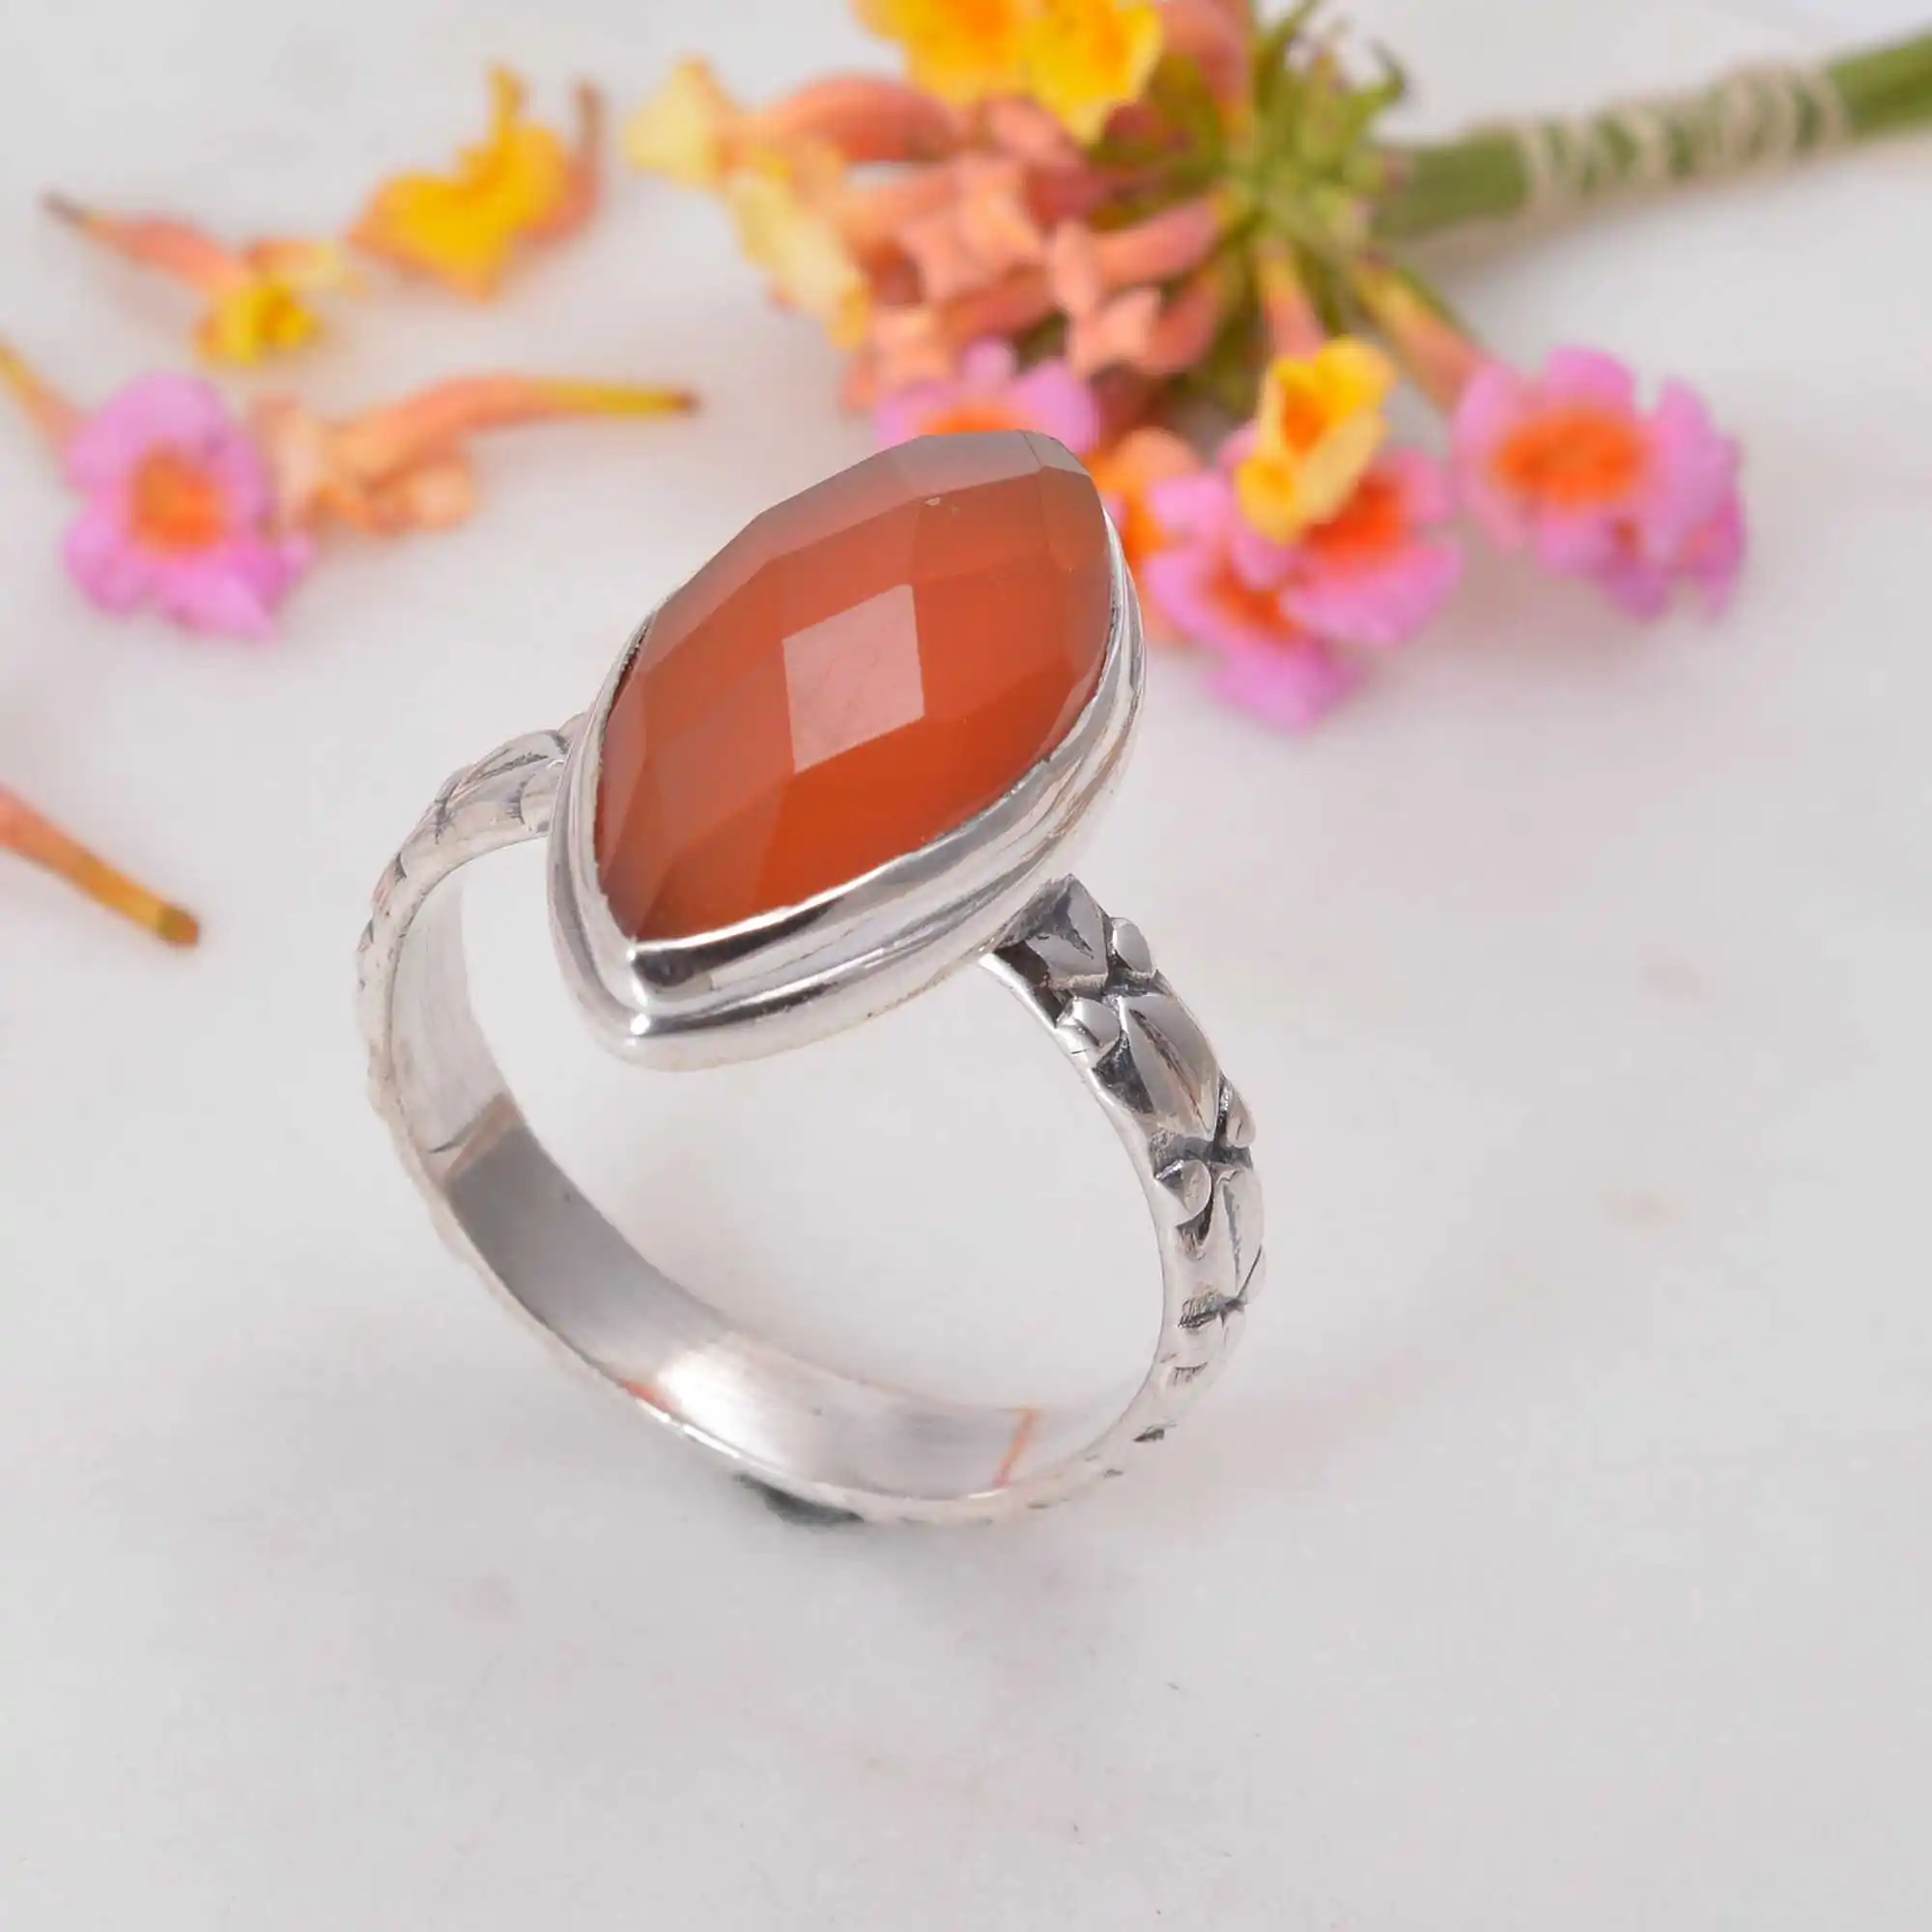 Carnelian แหวนหินคาร์เนเลียนสำหรับผู้ชาย,แหวนหินสีส้มแหวนหมั้นแหวนพลอยแท้สำหรับผู้หญิงจากอินเดีย